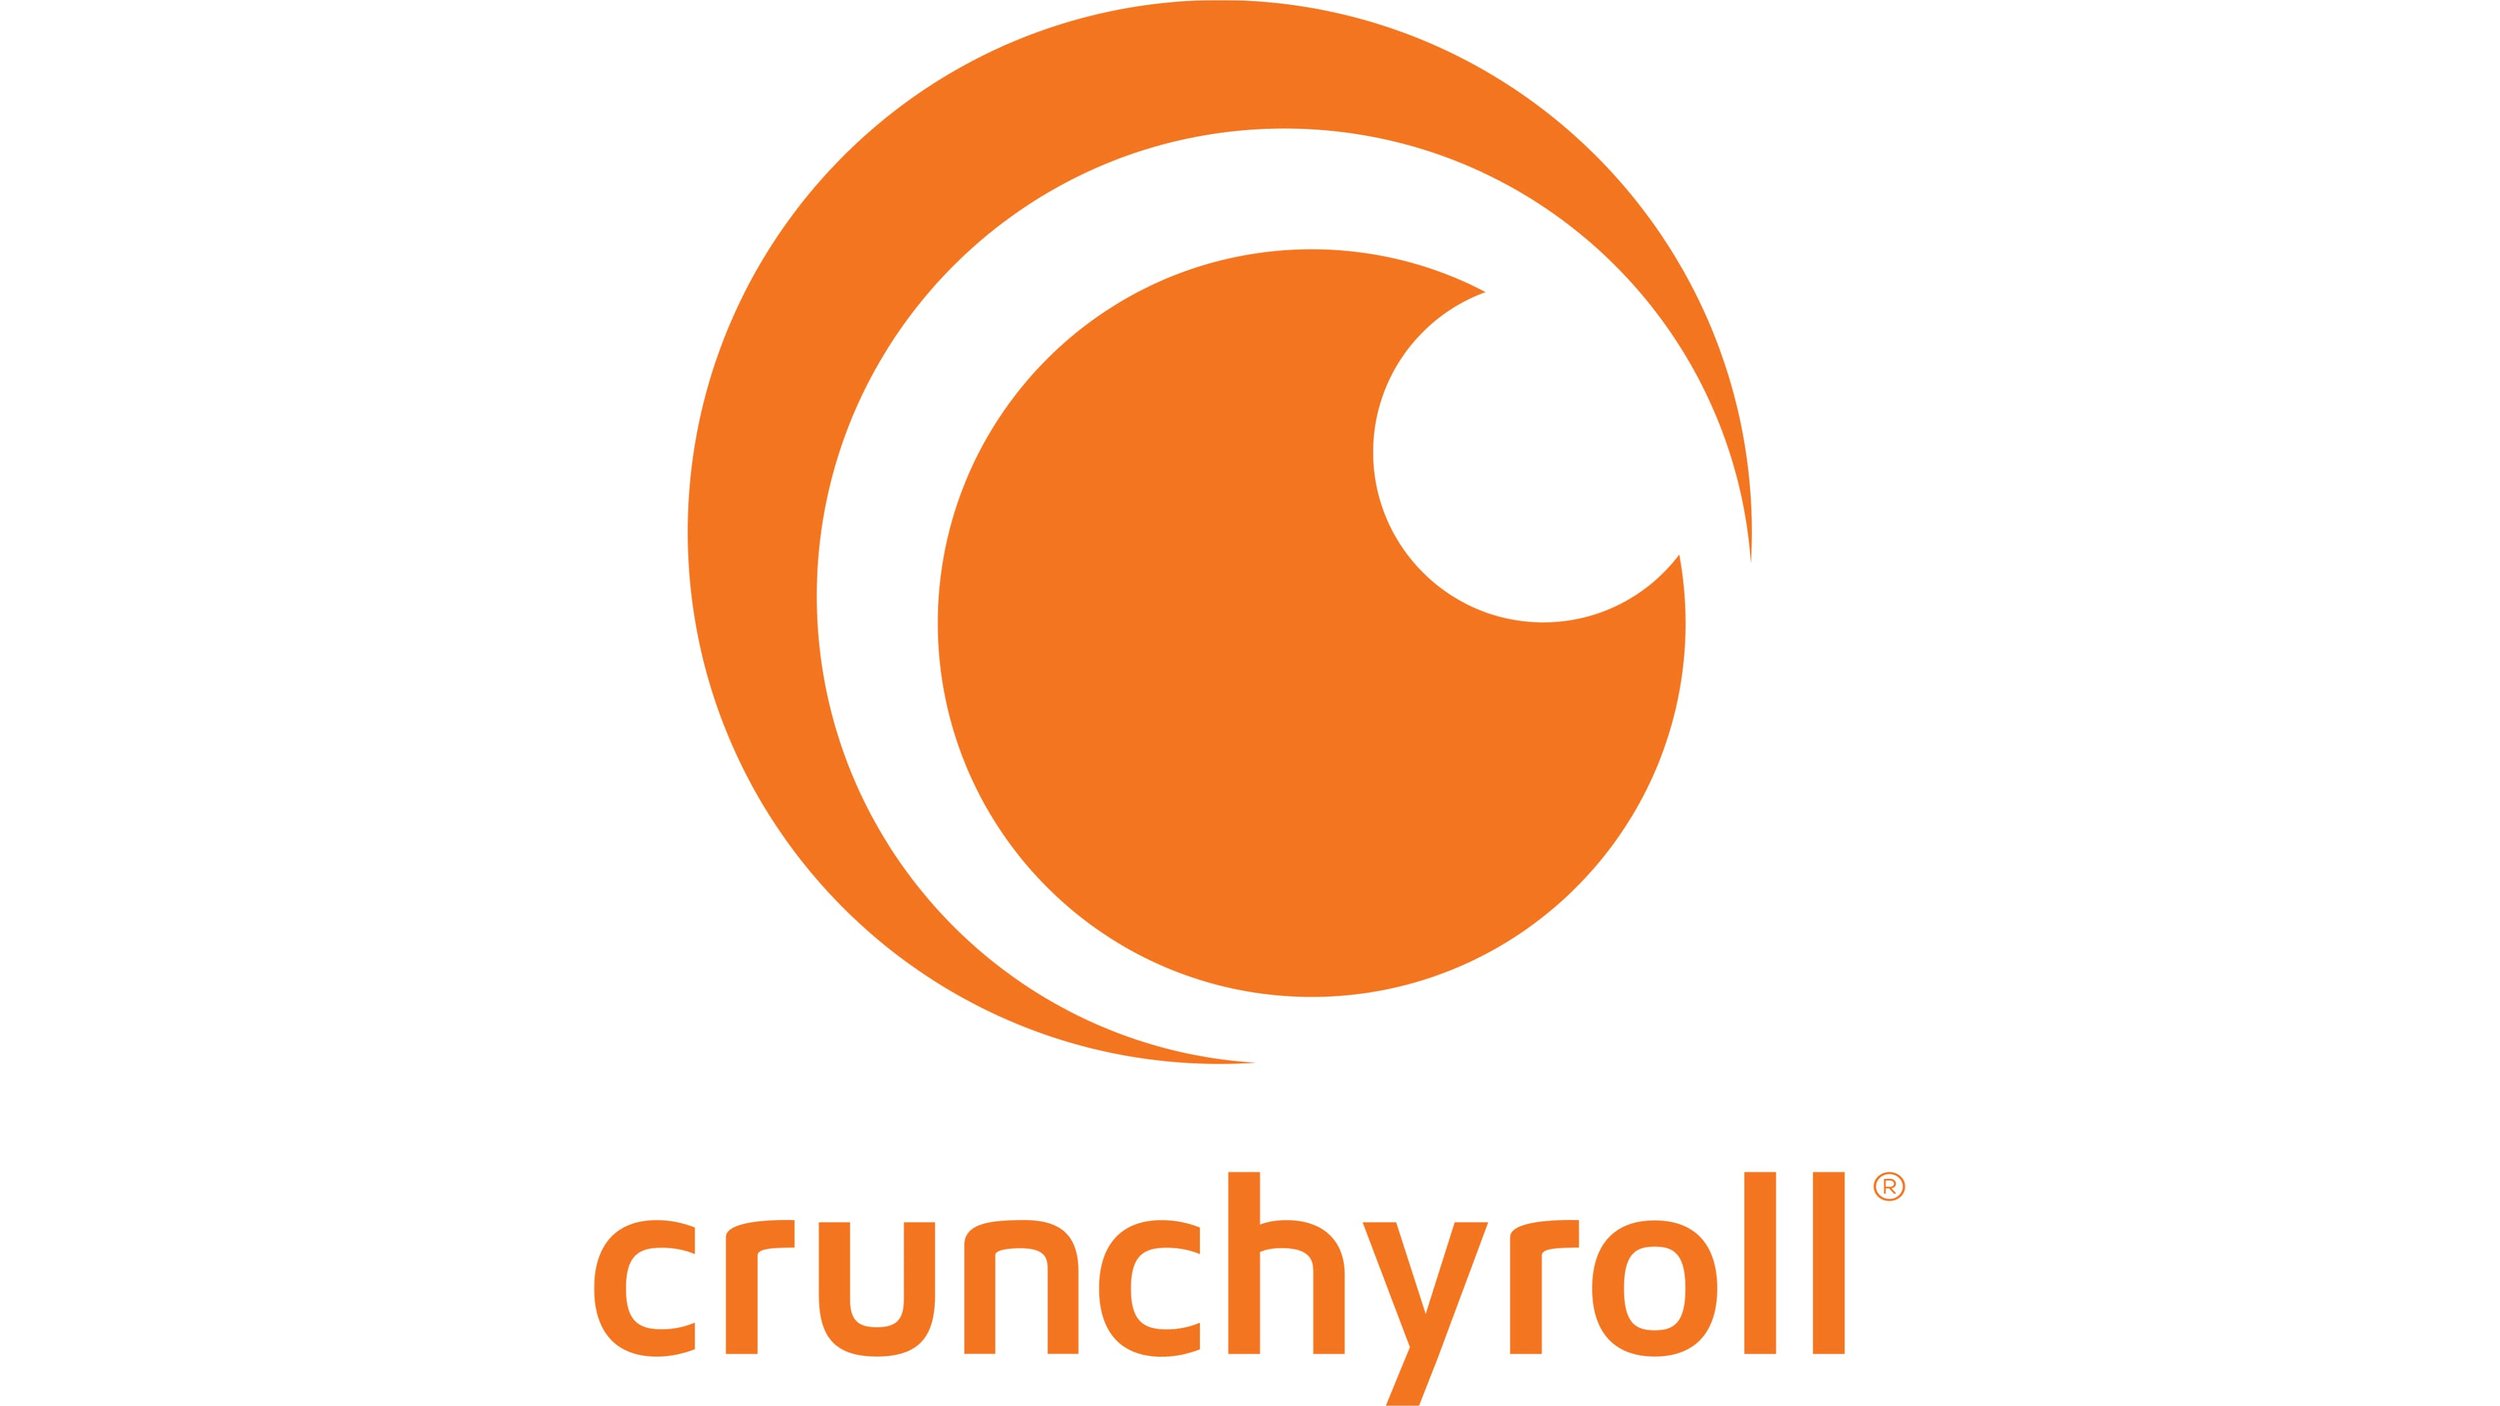 crunchyroll.jpg